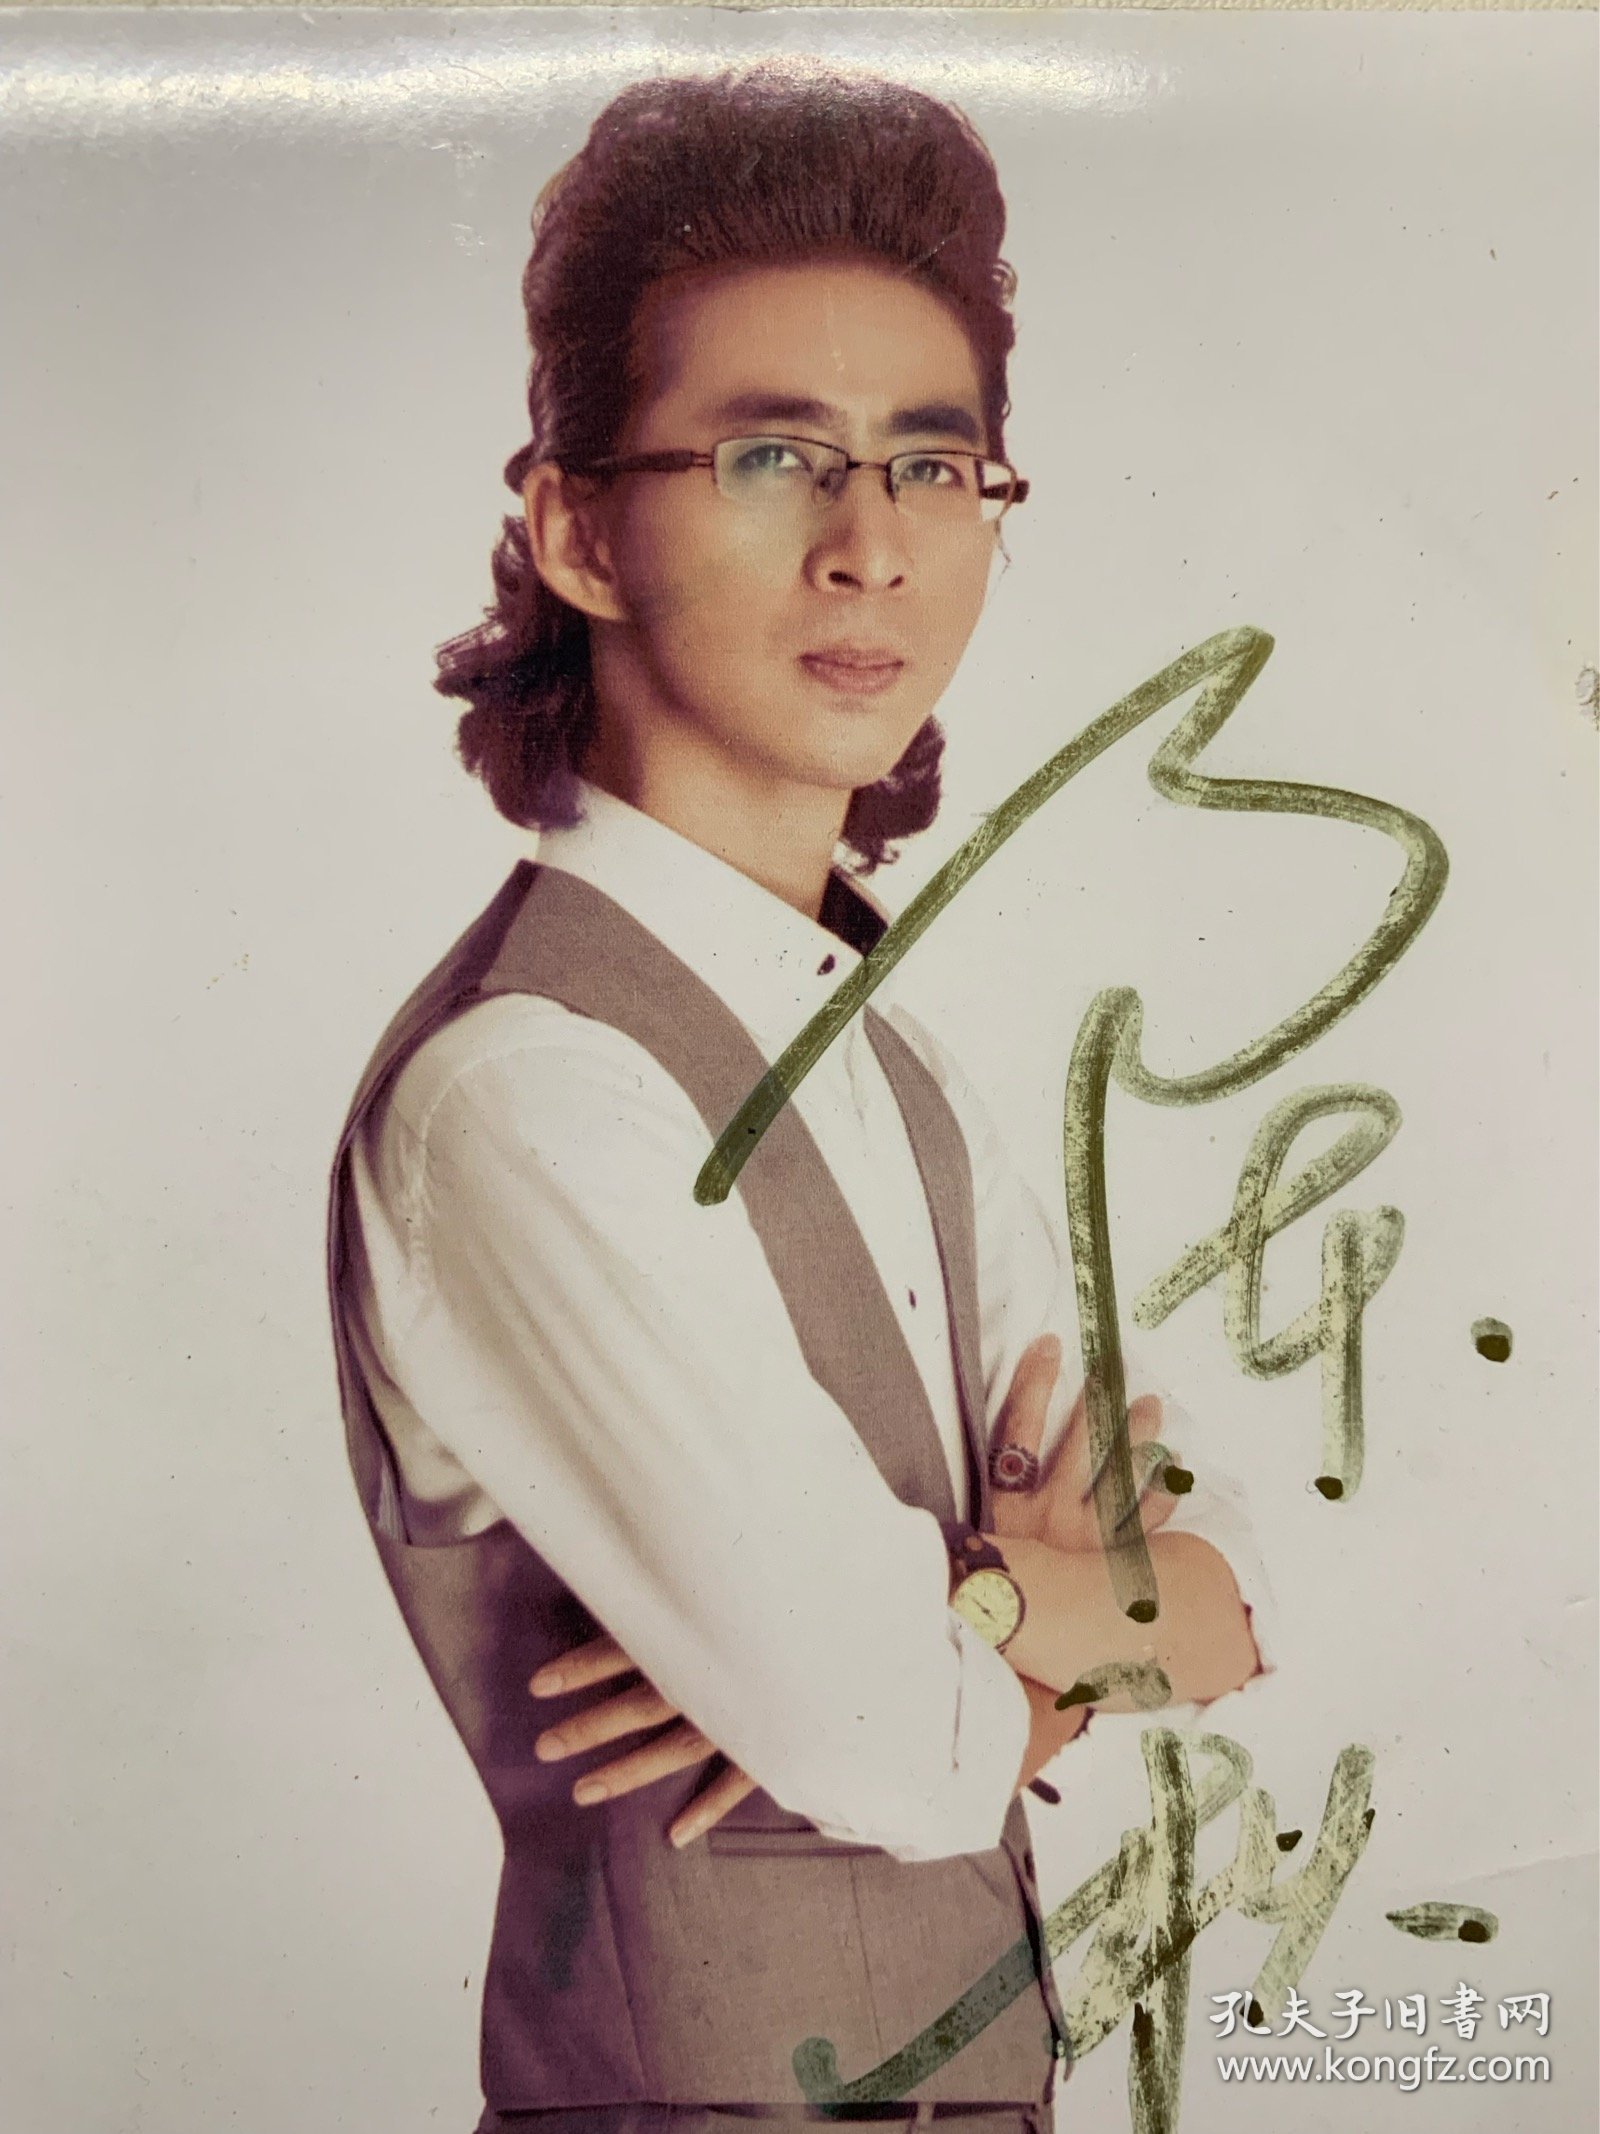 陈秋实签名照片，曾获得《我是演说家》亚军，签名日期2015年3月。品相一般，具体见图。